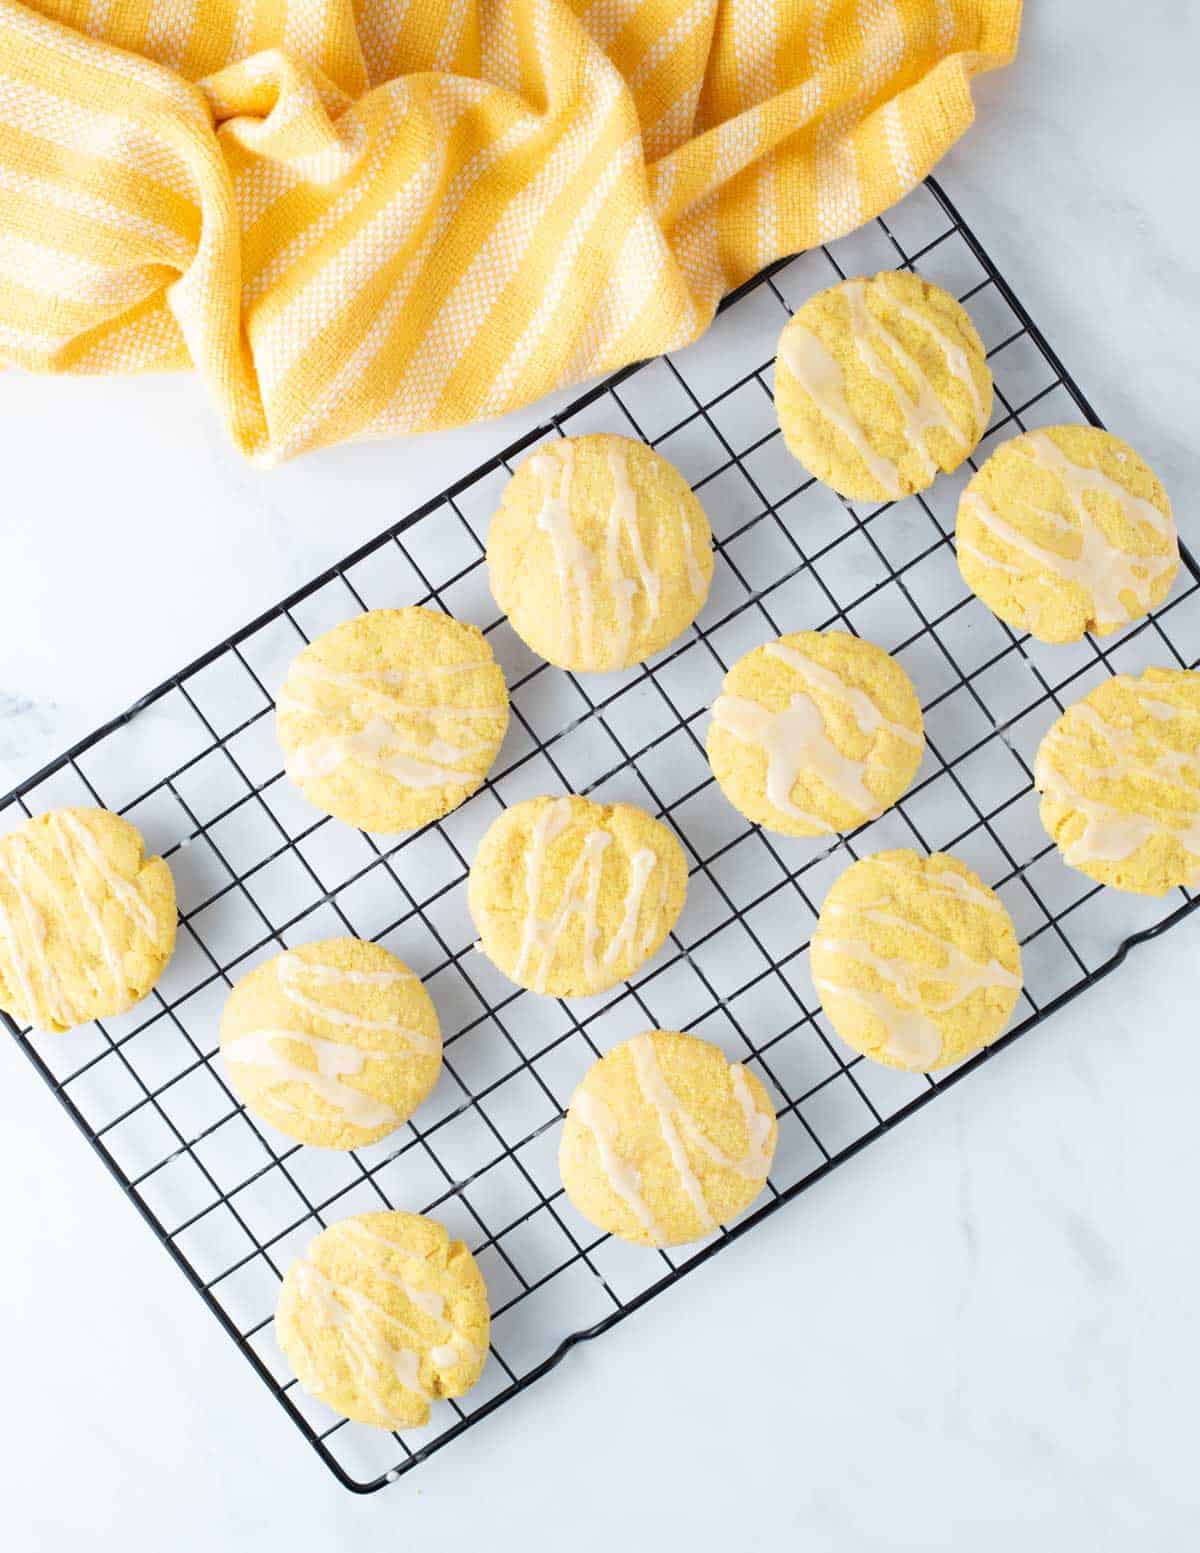 Vegan lemon cookies on cooling rack.
